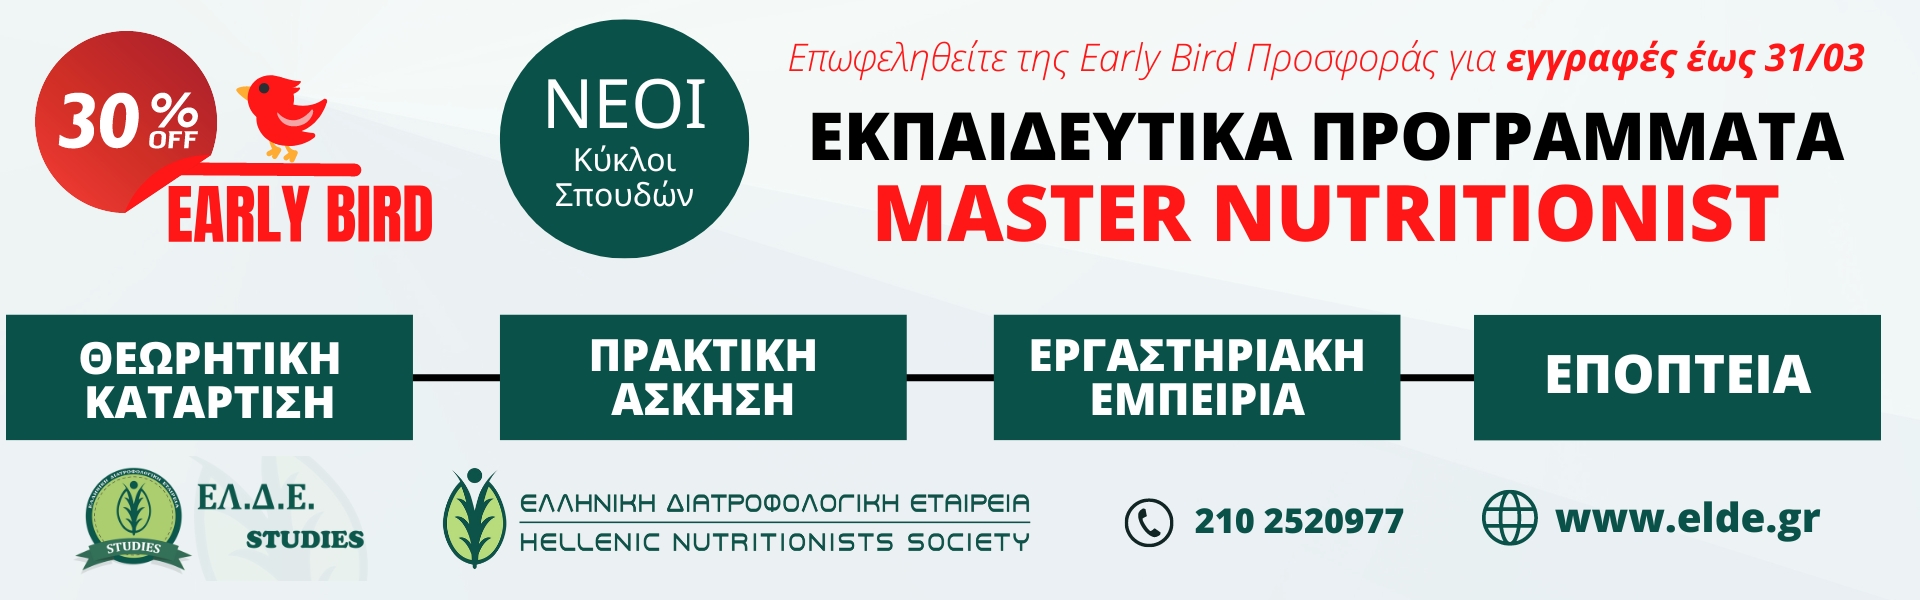 Νέοι κύκλοι σπουδών (Εαρινά Τμήματα): EARLY BIRD εγγραφές στην ΕΛ.Δ.Ε. STUDIES! - αθλητική διατροφή